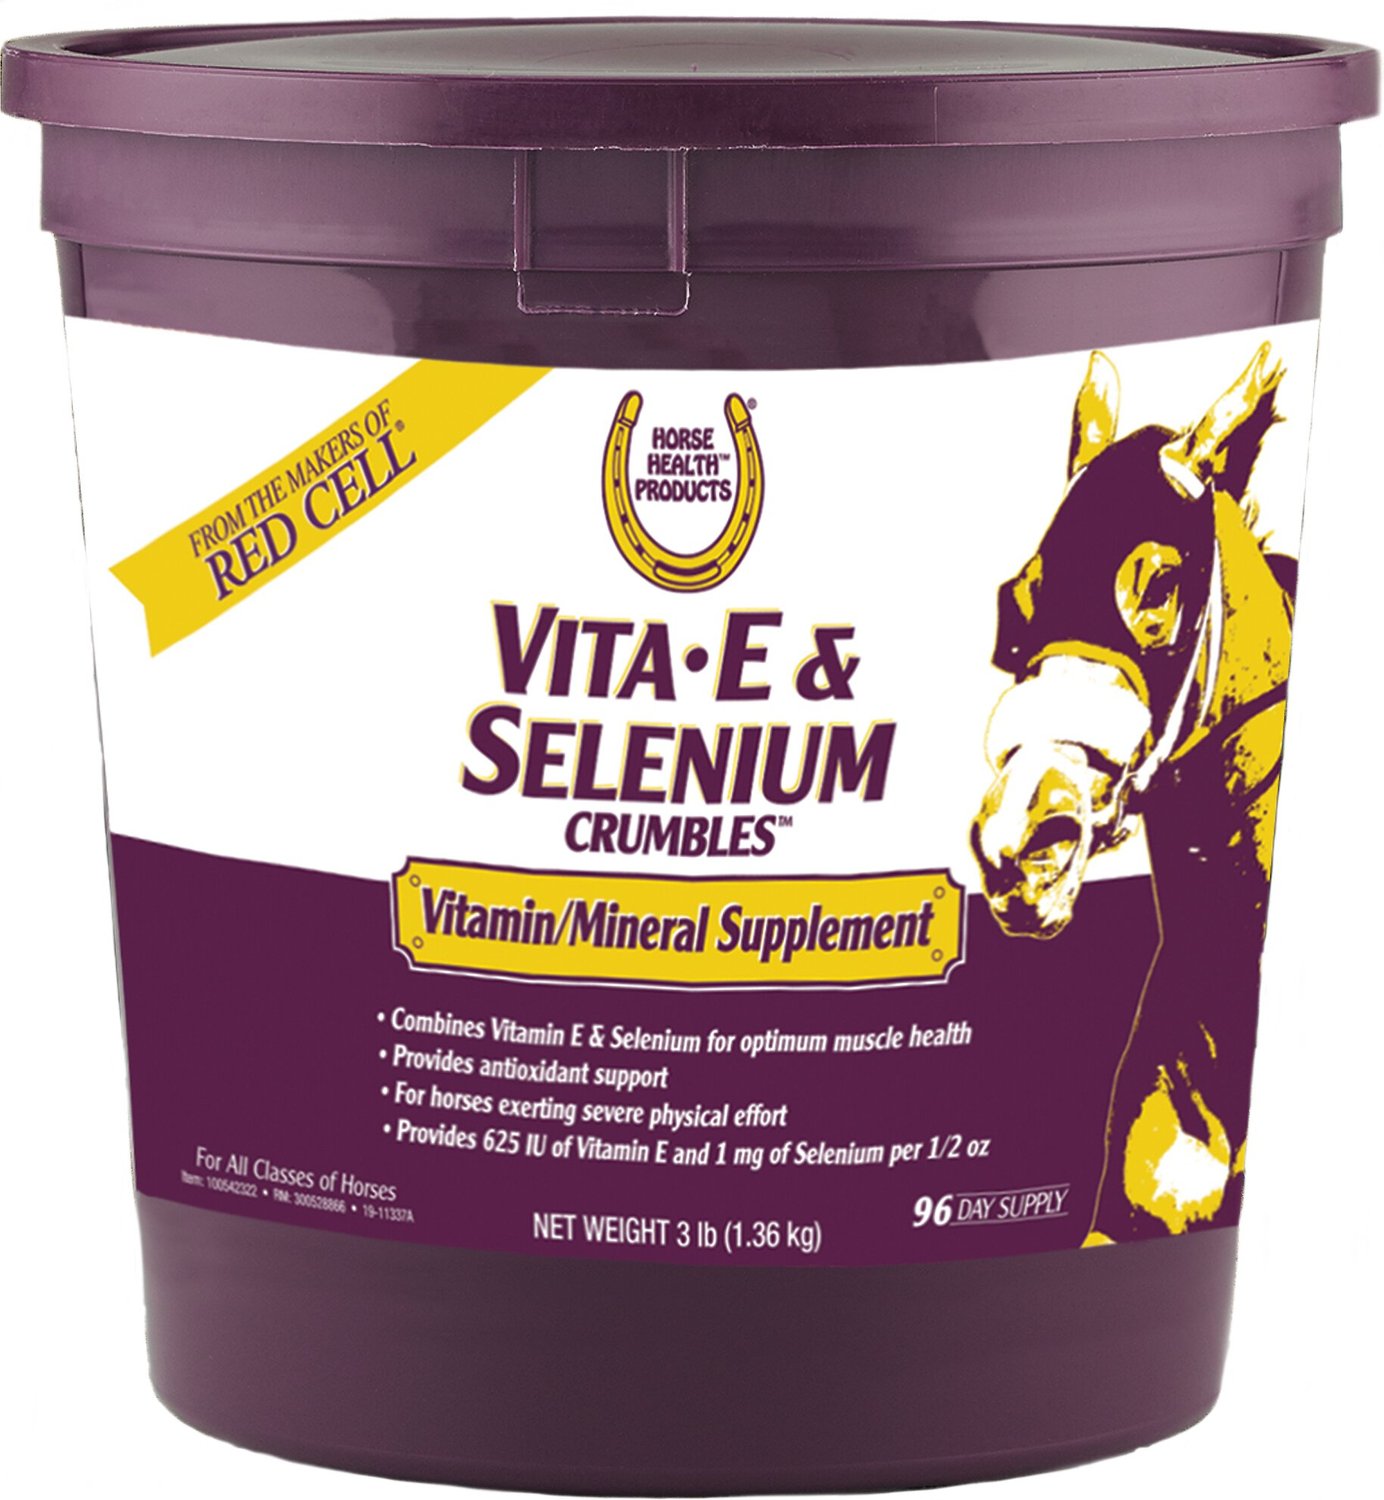 Horse Health Products Vita E Selenium Crumbles Horse Supplement 3 Lb Bucket Chewy Com